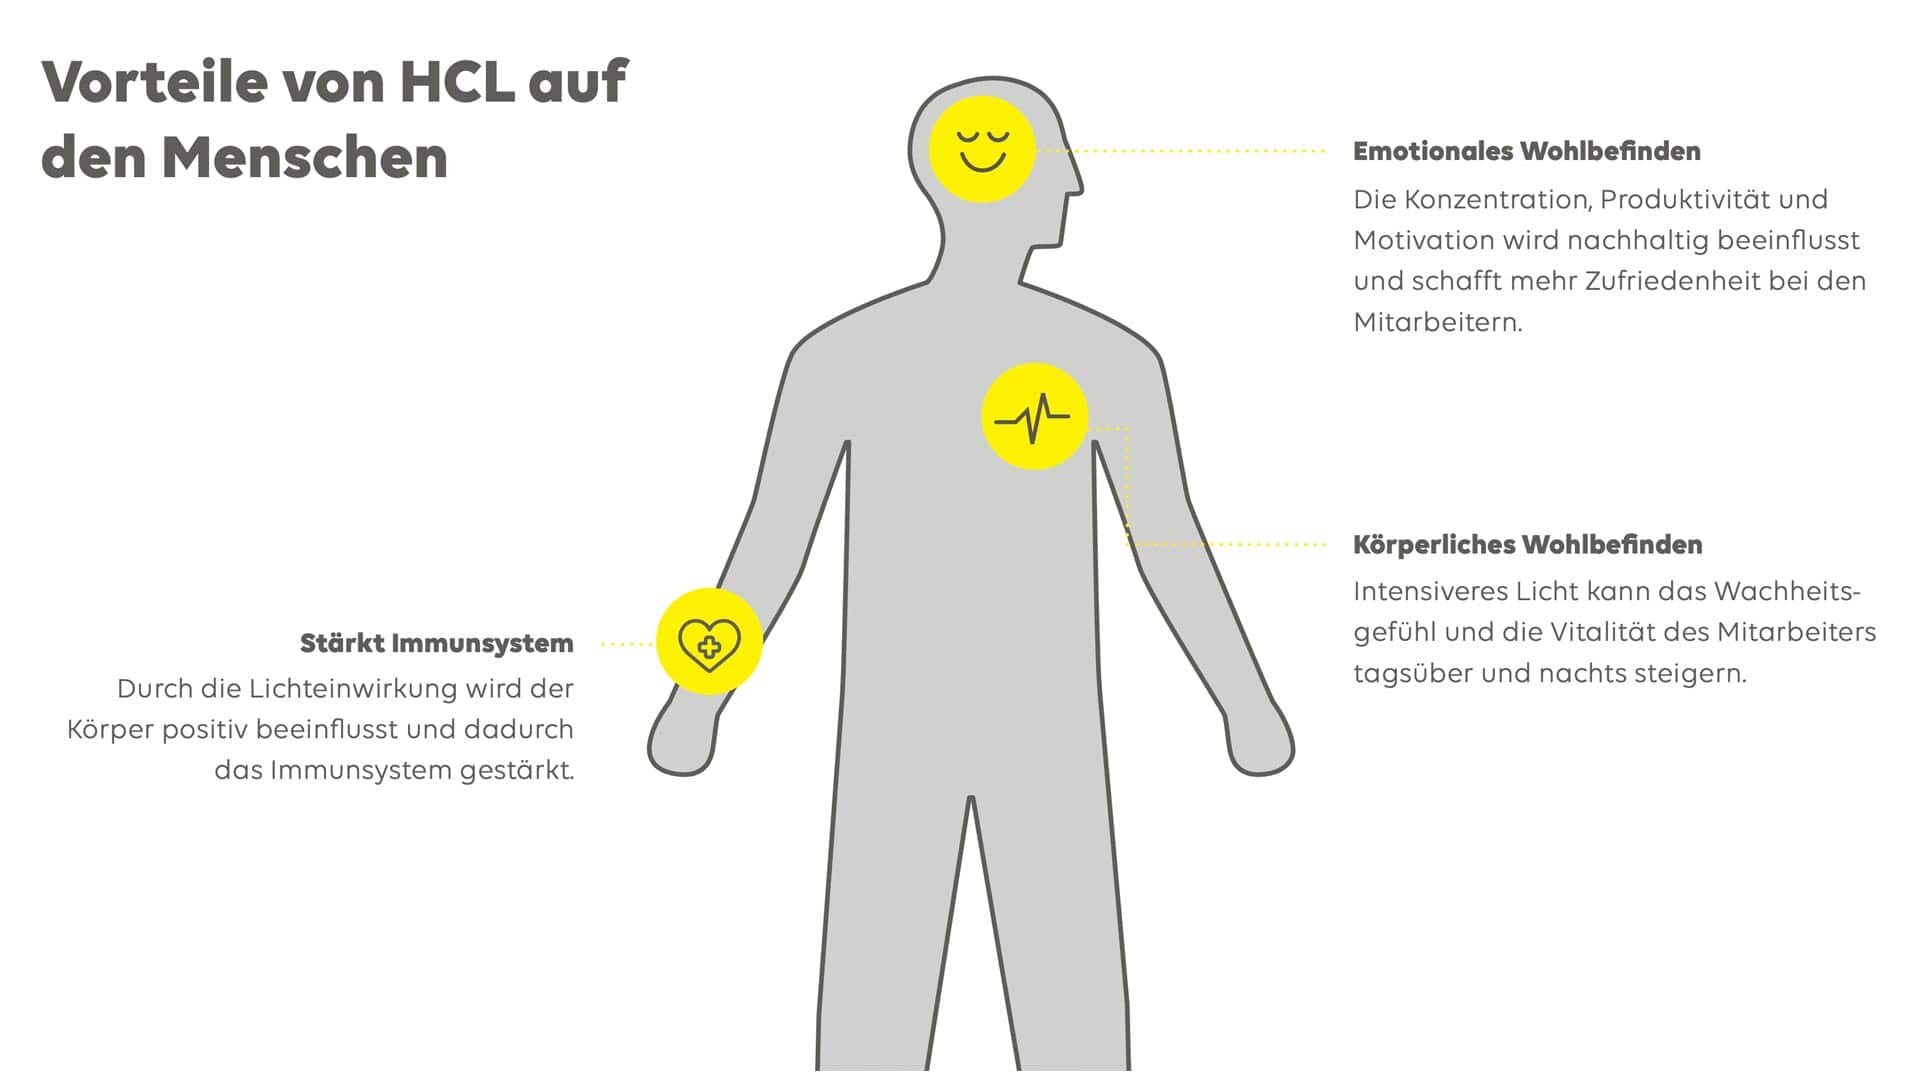 Grafik über die Vorteile von HCL auf Menschen